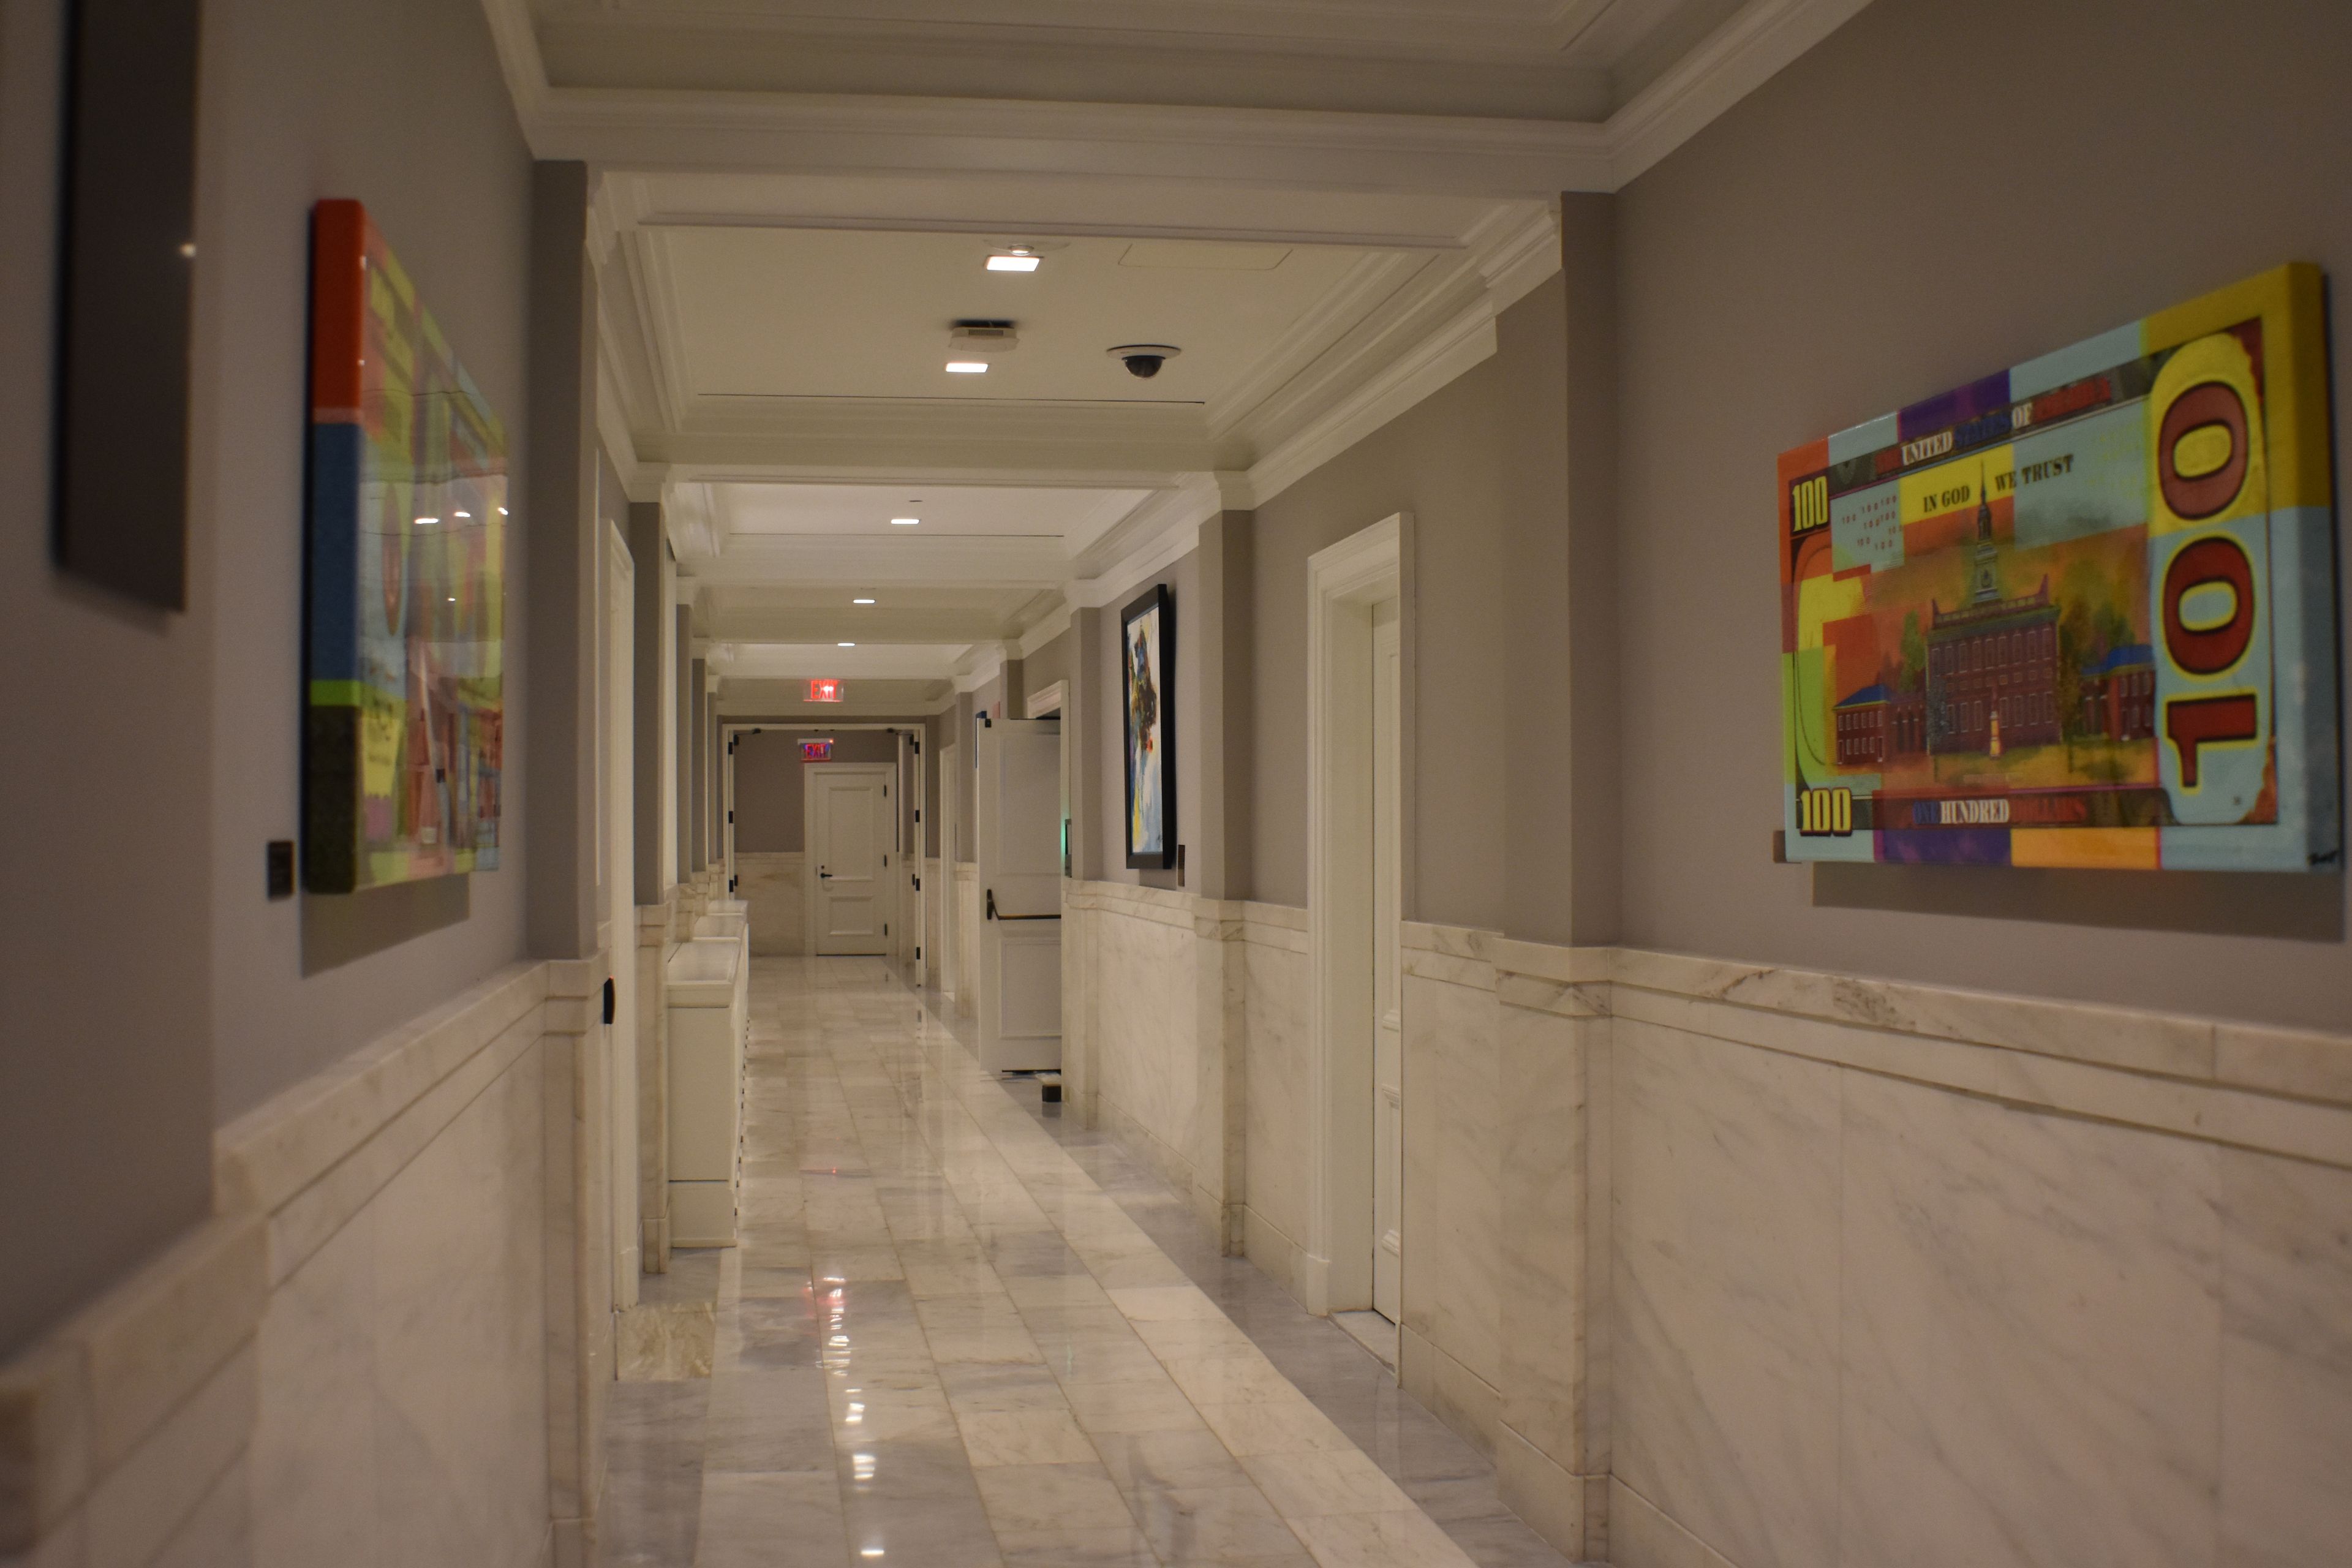 La estética moderna de los pasillos con guiños a la filosofía capitalista es otro de los atractivos en los pasillos interiores de la bolsa de Estados Unidos.